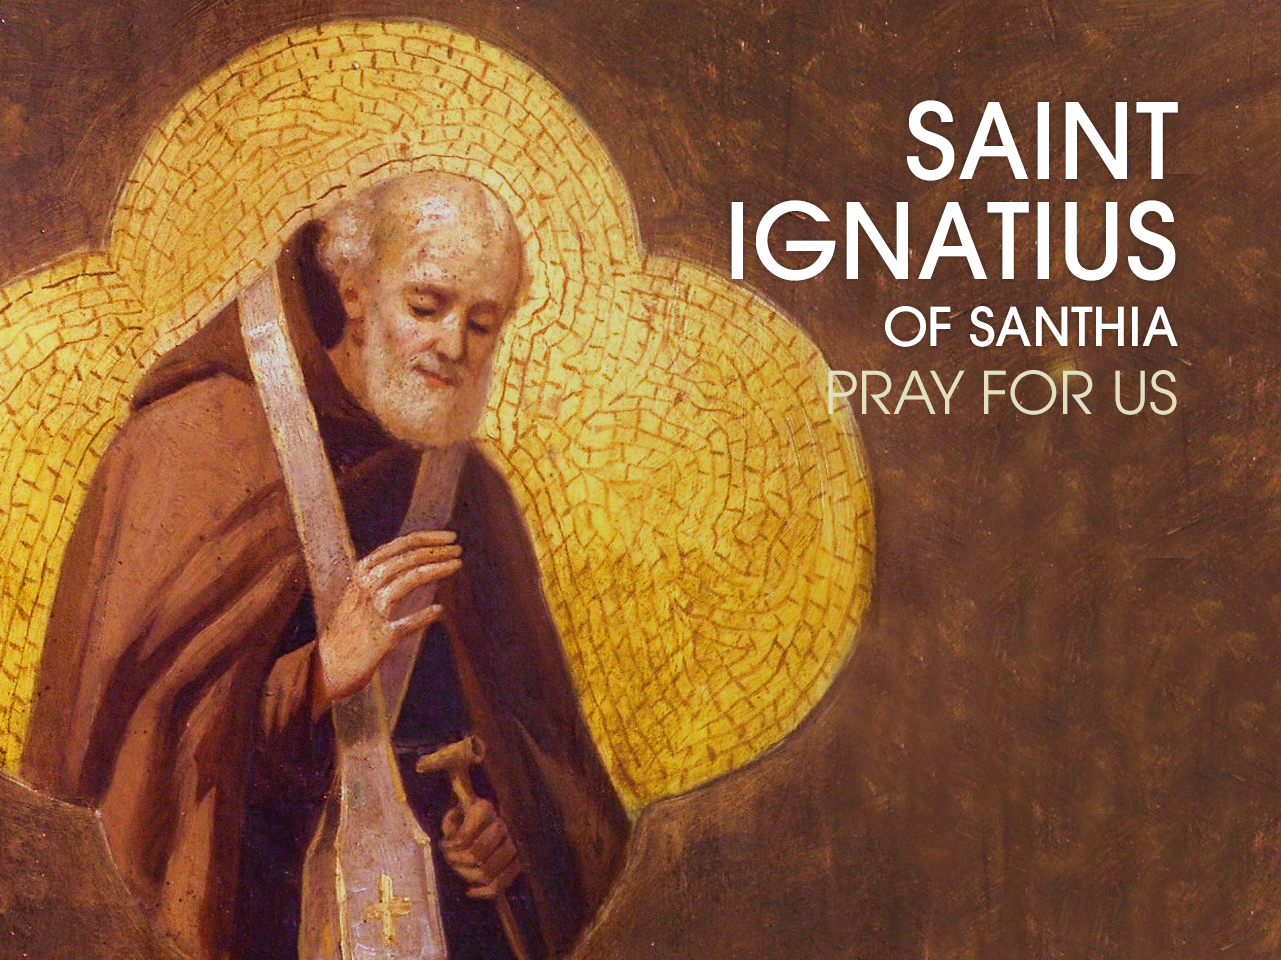 Saint Ignatius of Santhia